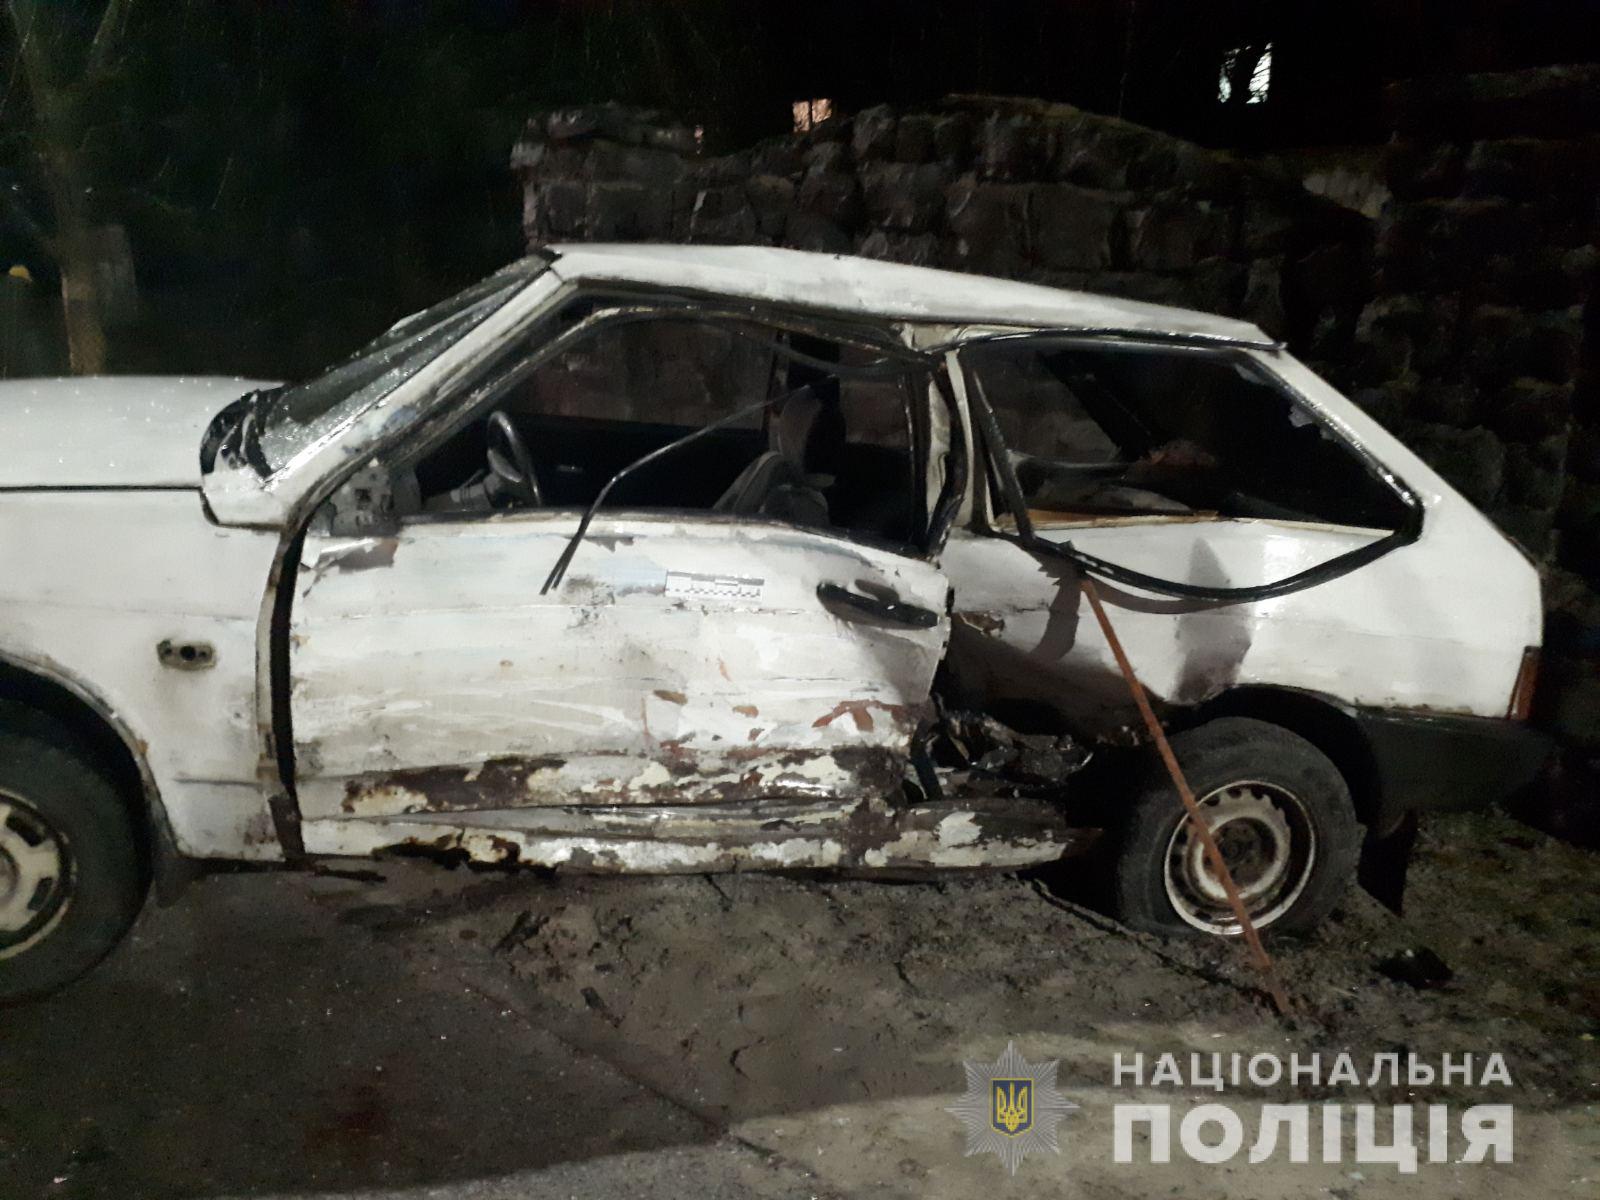 Двоє осіб травмувались унаслідок автокатастрофи на Львівщині